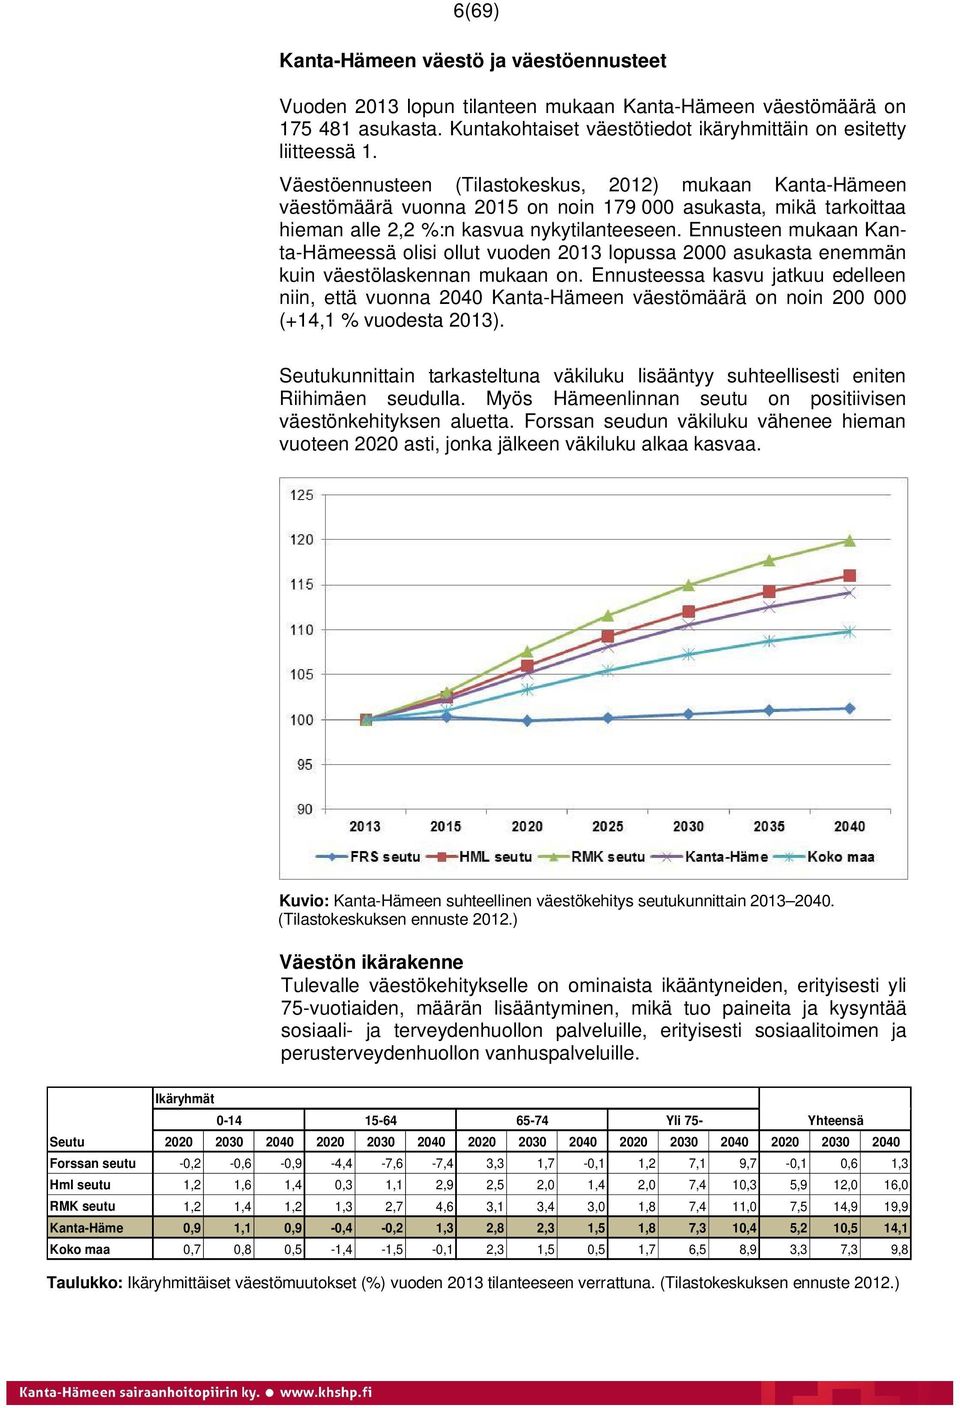 Ennusteen mukaan Kanta-Hämeessä olisi ollut vuoden 2013 lopussa 2000 asukasta enemmän kuin väestölaskennan mukaan on.